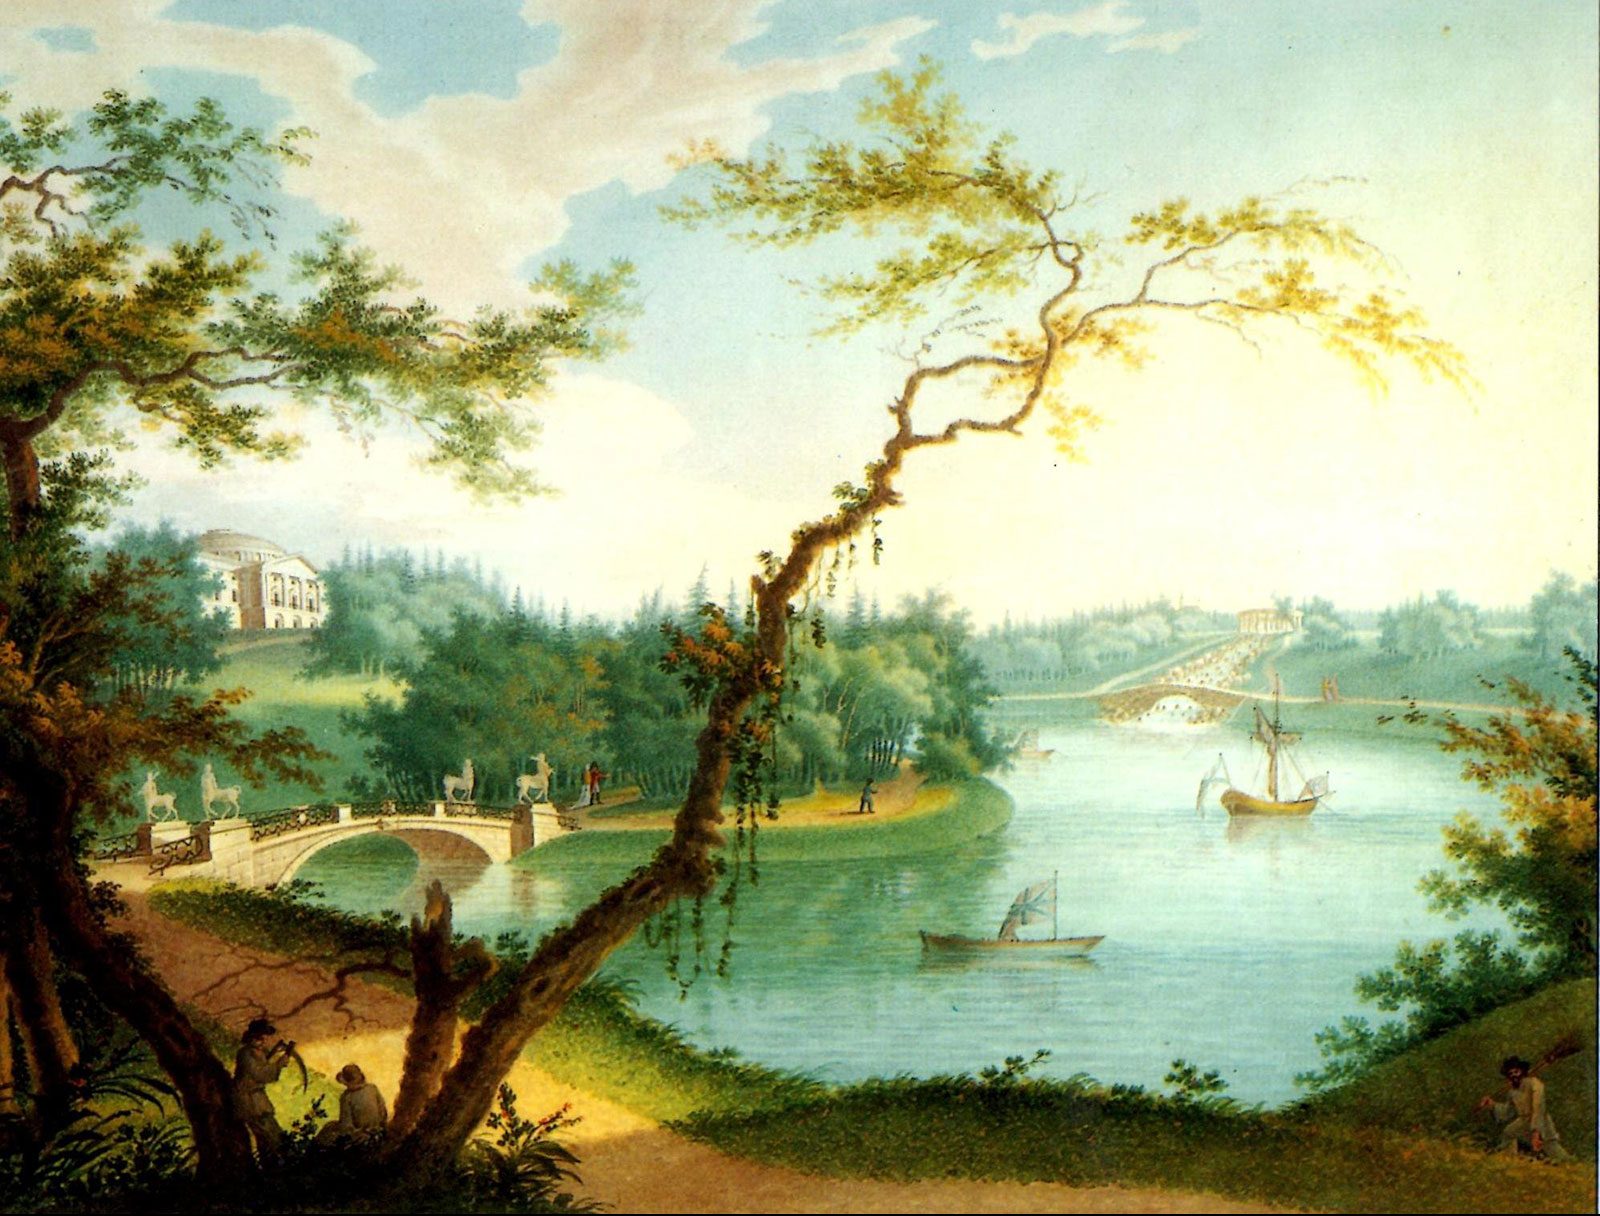 Долина реки Славянка в павловском парке, картина А.Бугреев, 1803г.